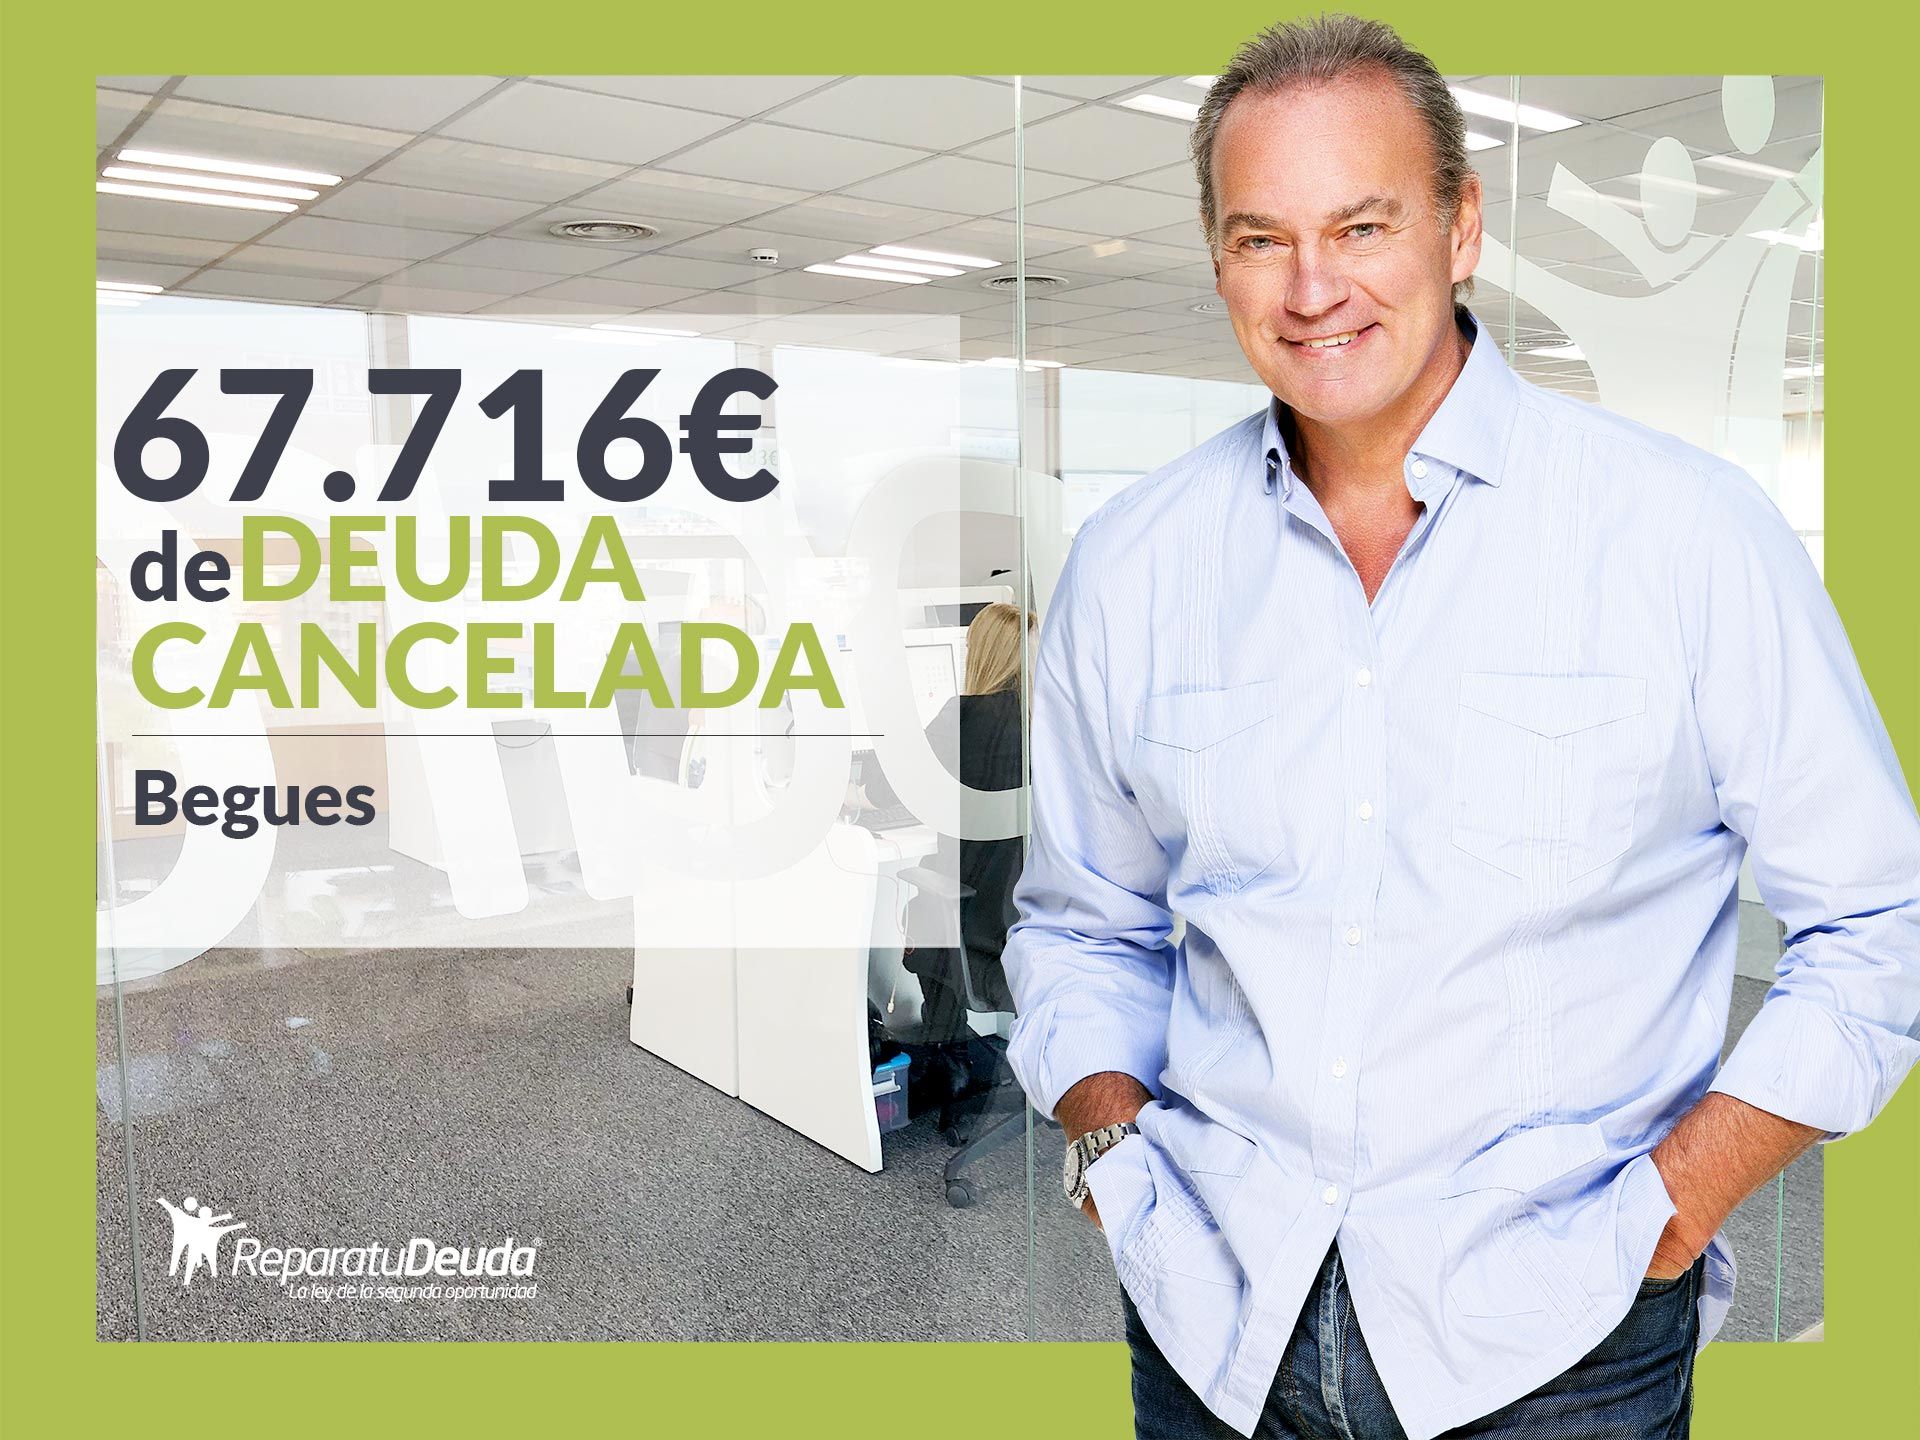 Repara tu Deuda Abogados cancela 67.716? en Begues (Barcelona) con la Ley de Segunda Oportunidad